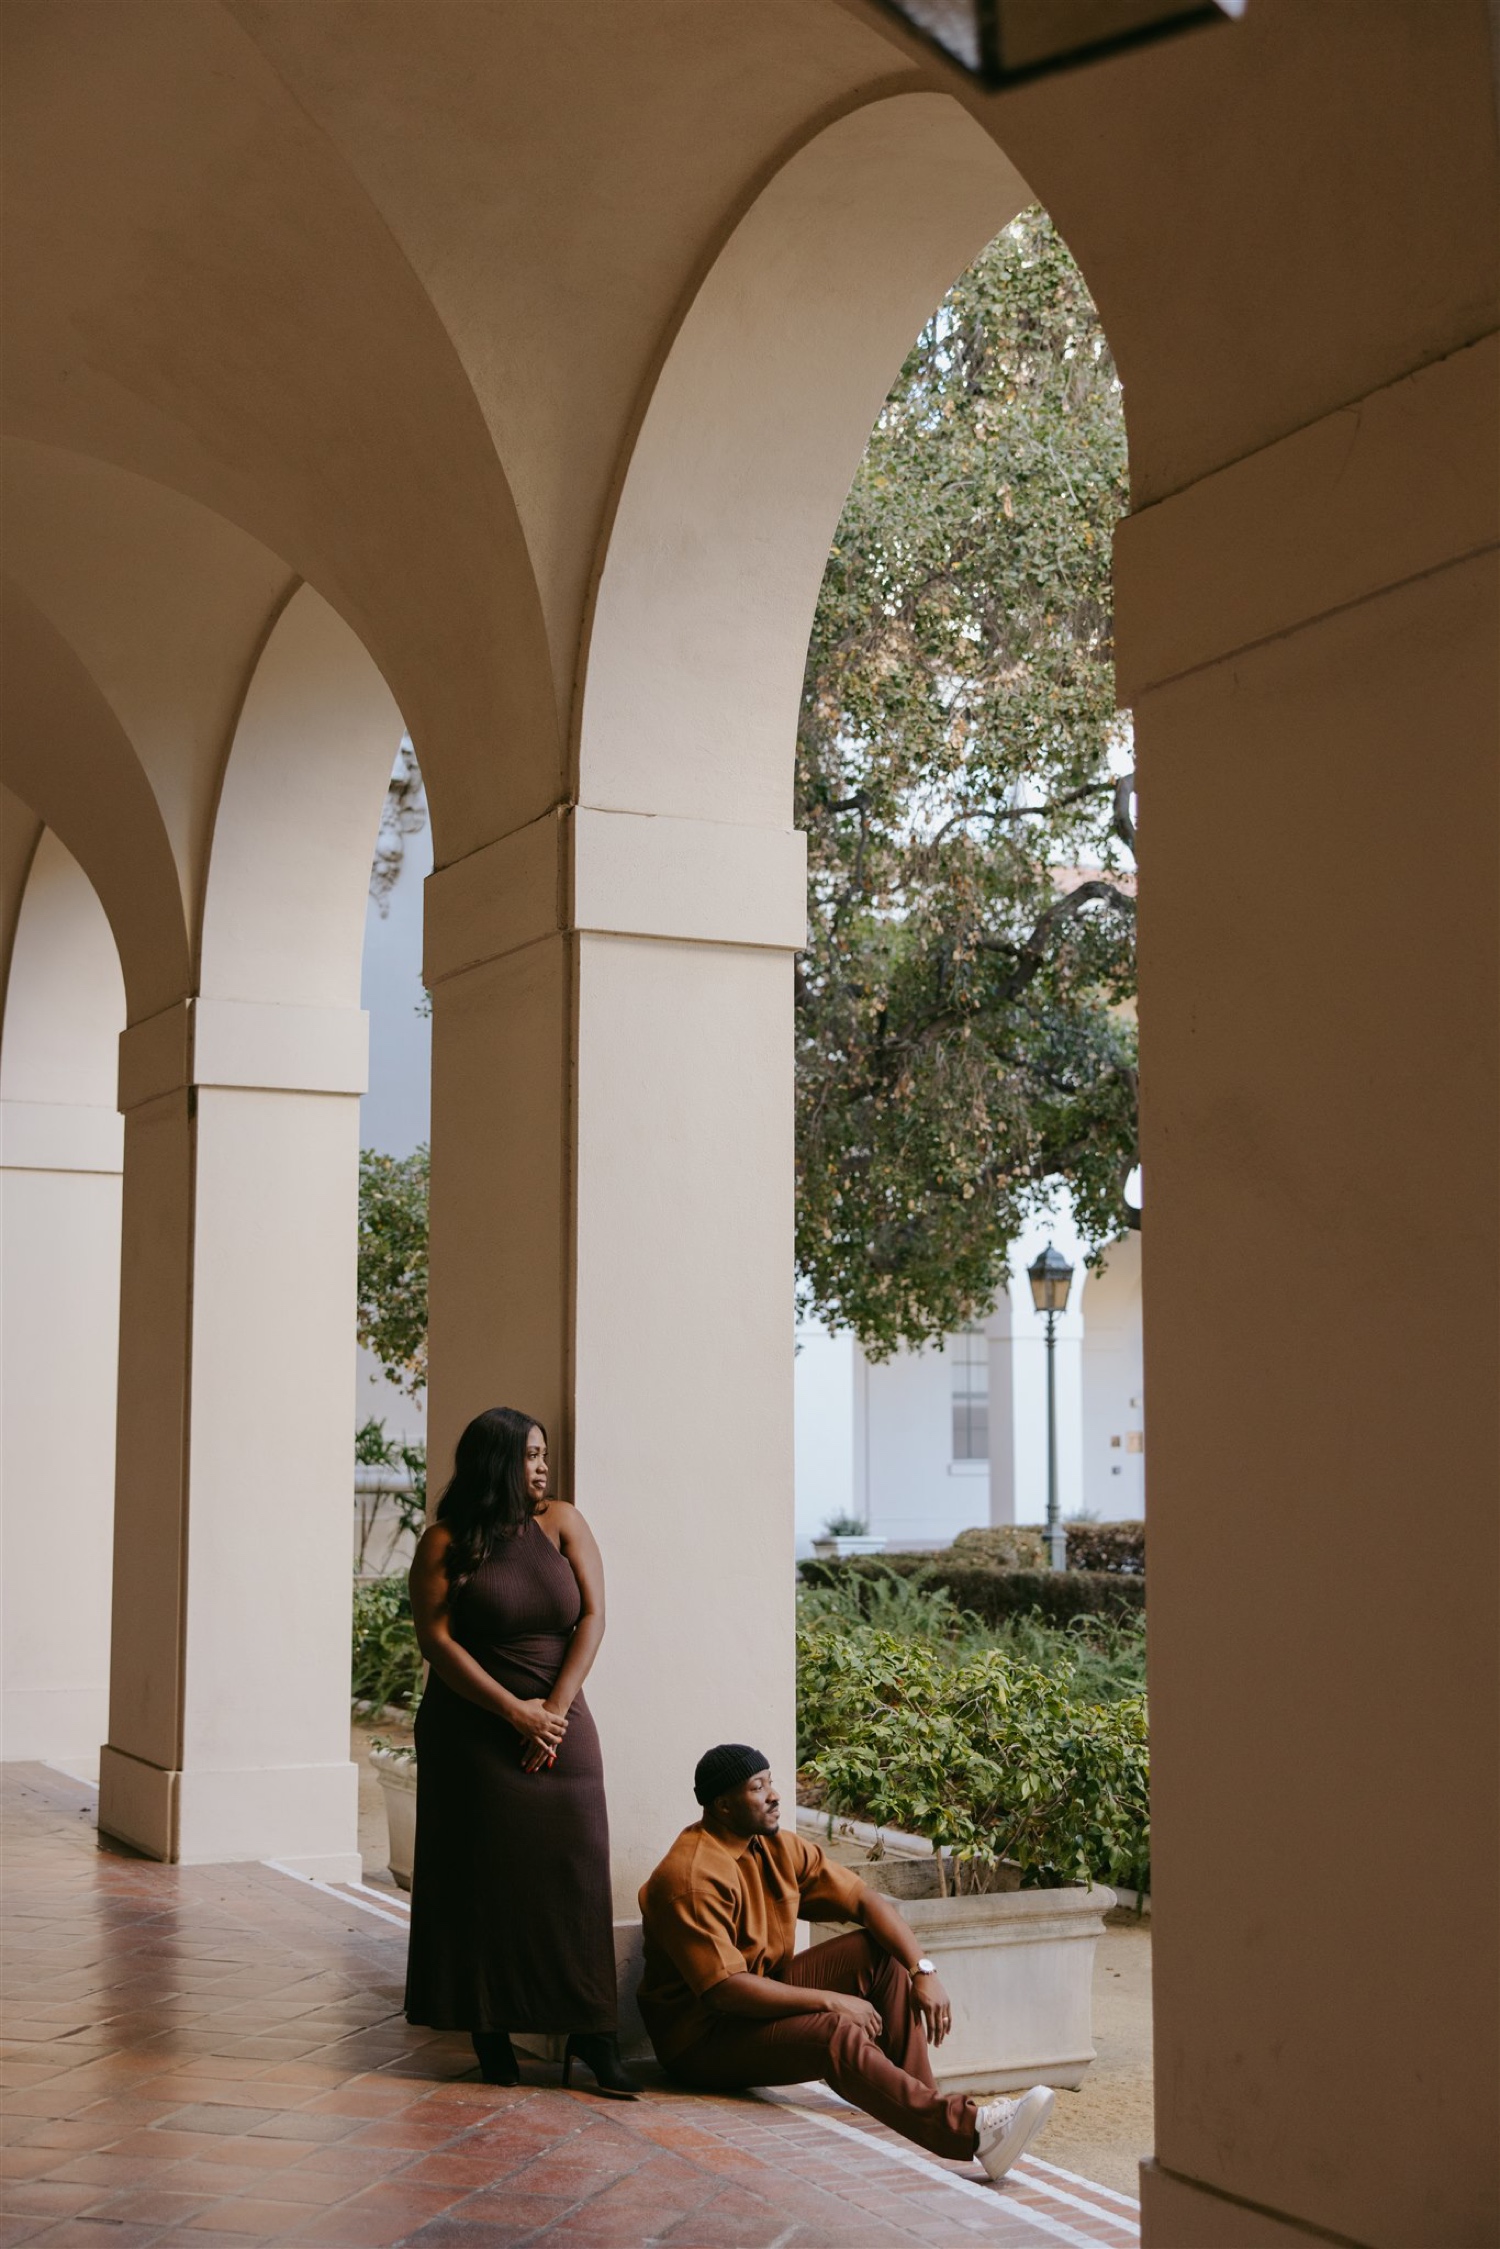 Pasadena City Hall couples photos by Hanna Walkowaik Photography